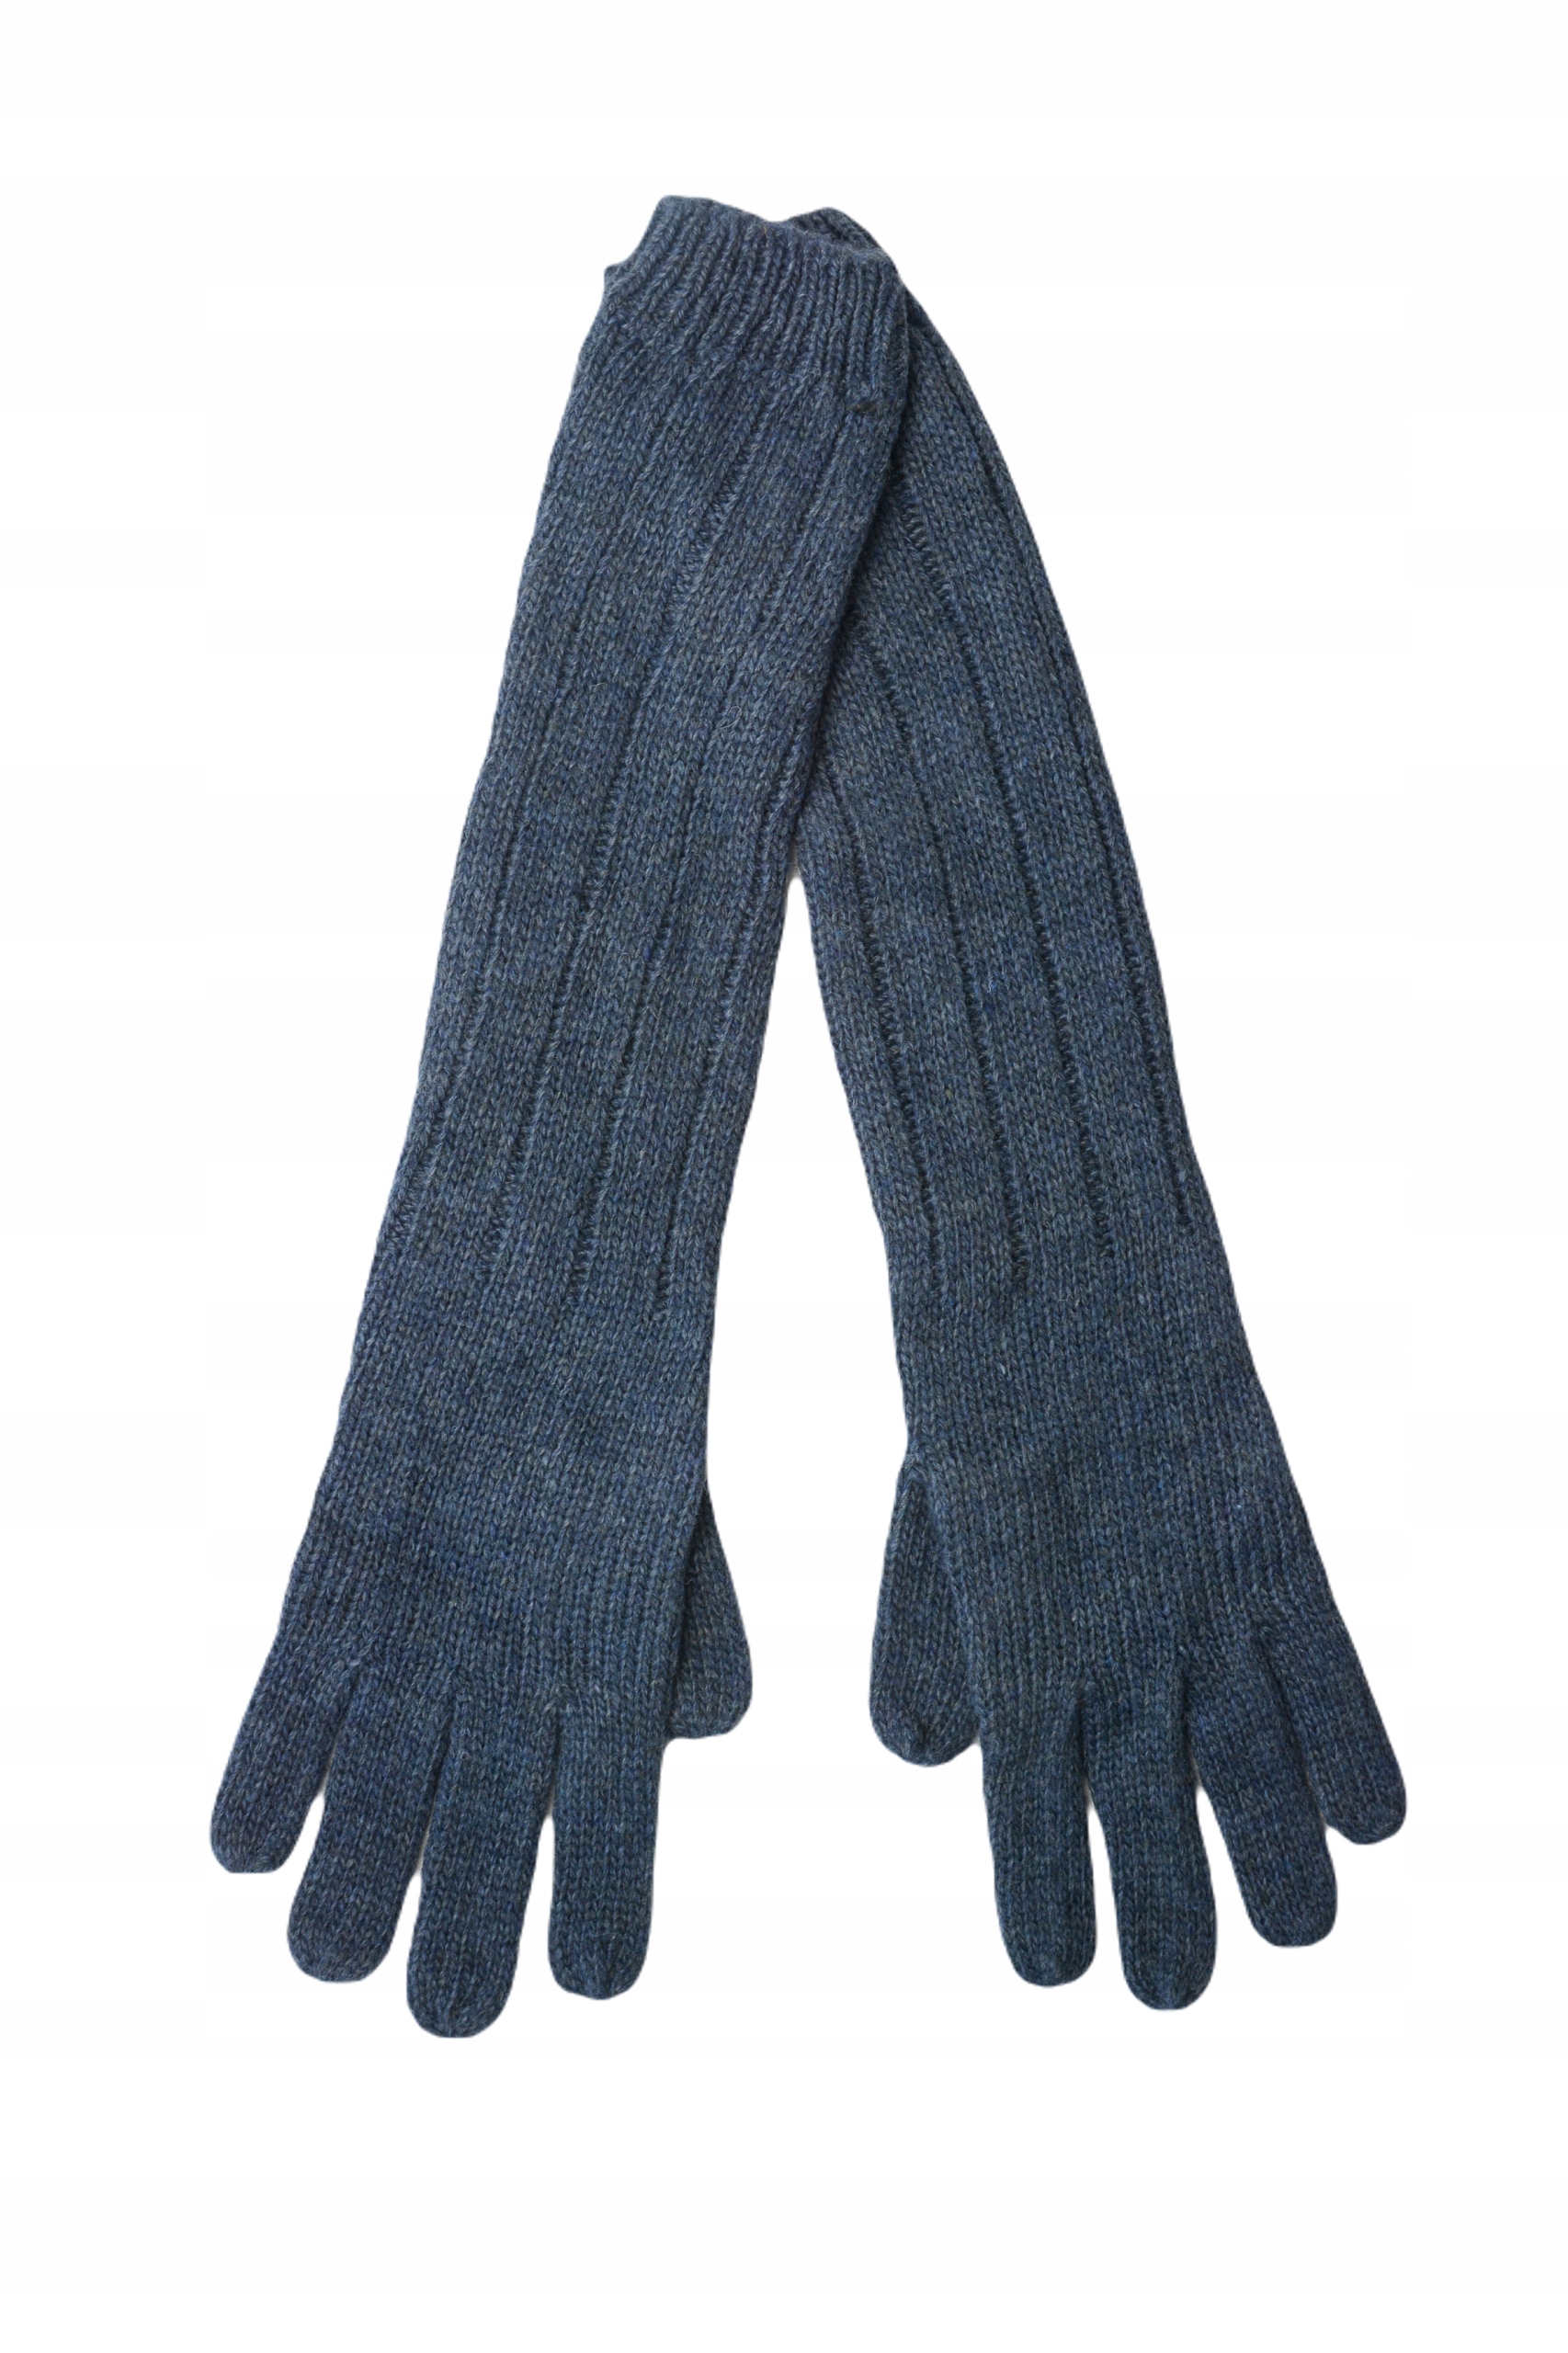 Zimné rukavice dlhé vlnené modré